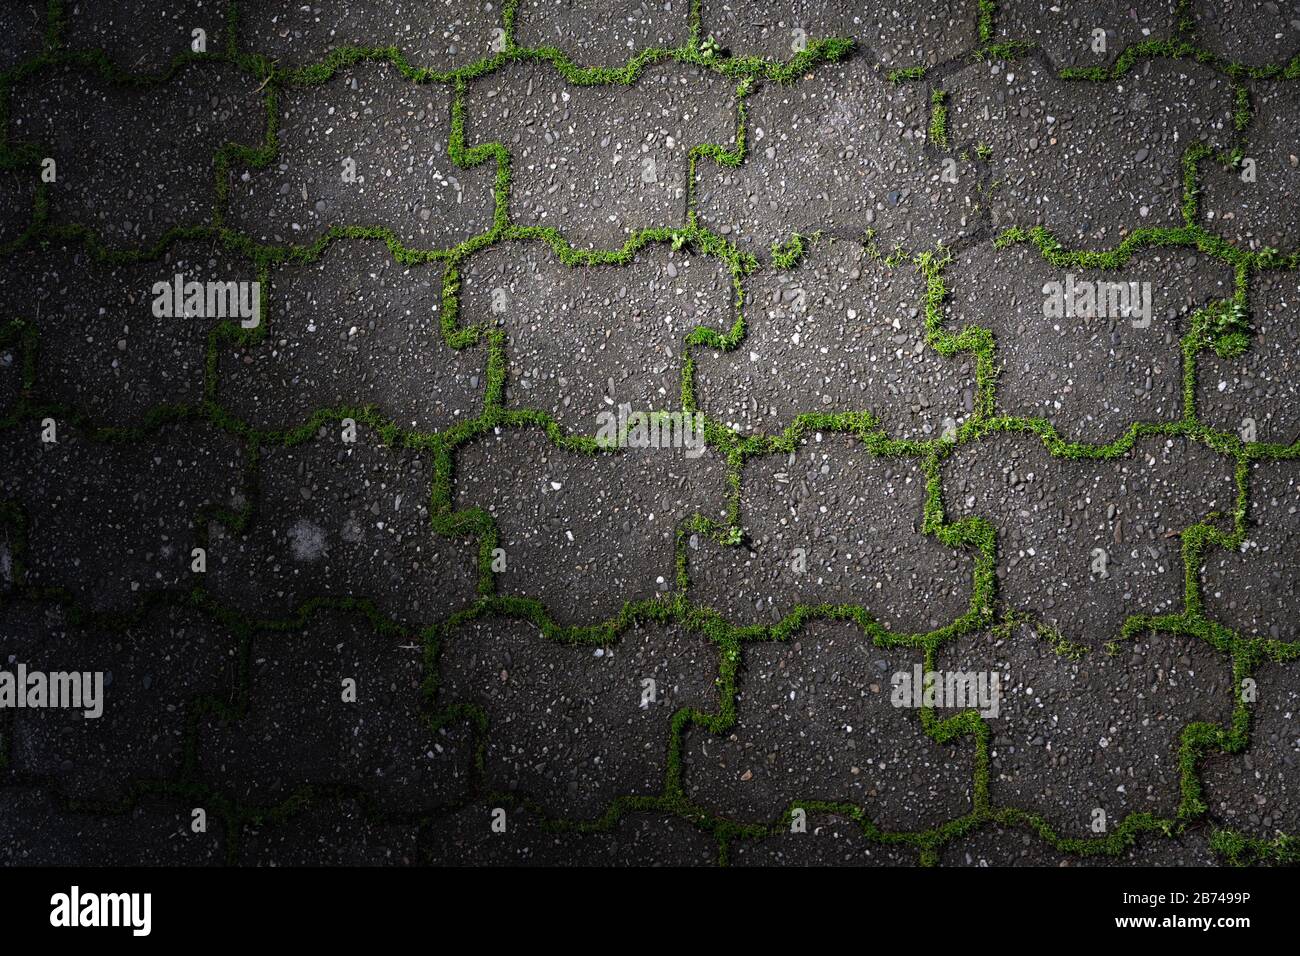 Grünes Unkraut wächst aus den Fugen grauer Betonpflastersteine bei landschaftlich schönem Licht. Stockfoto